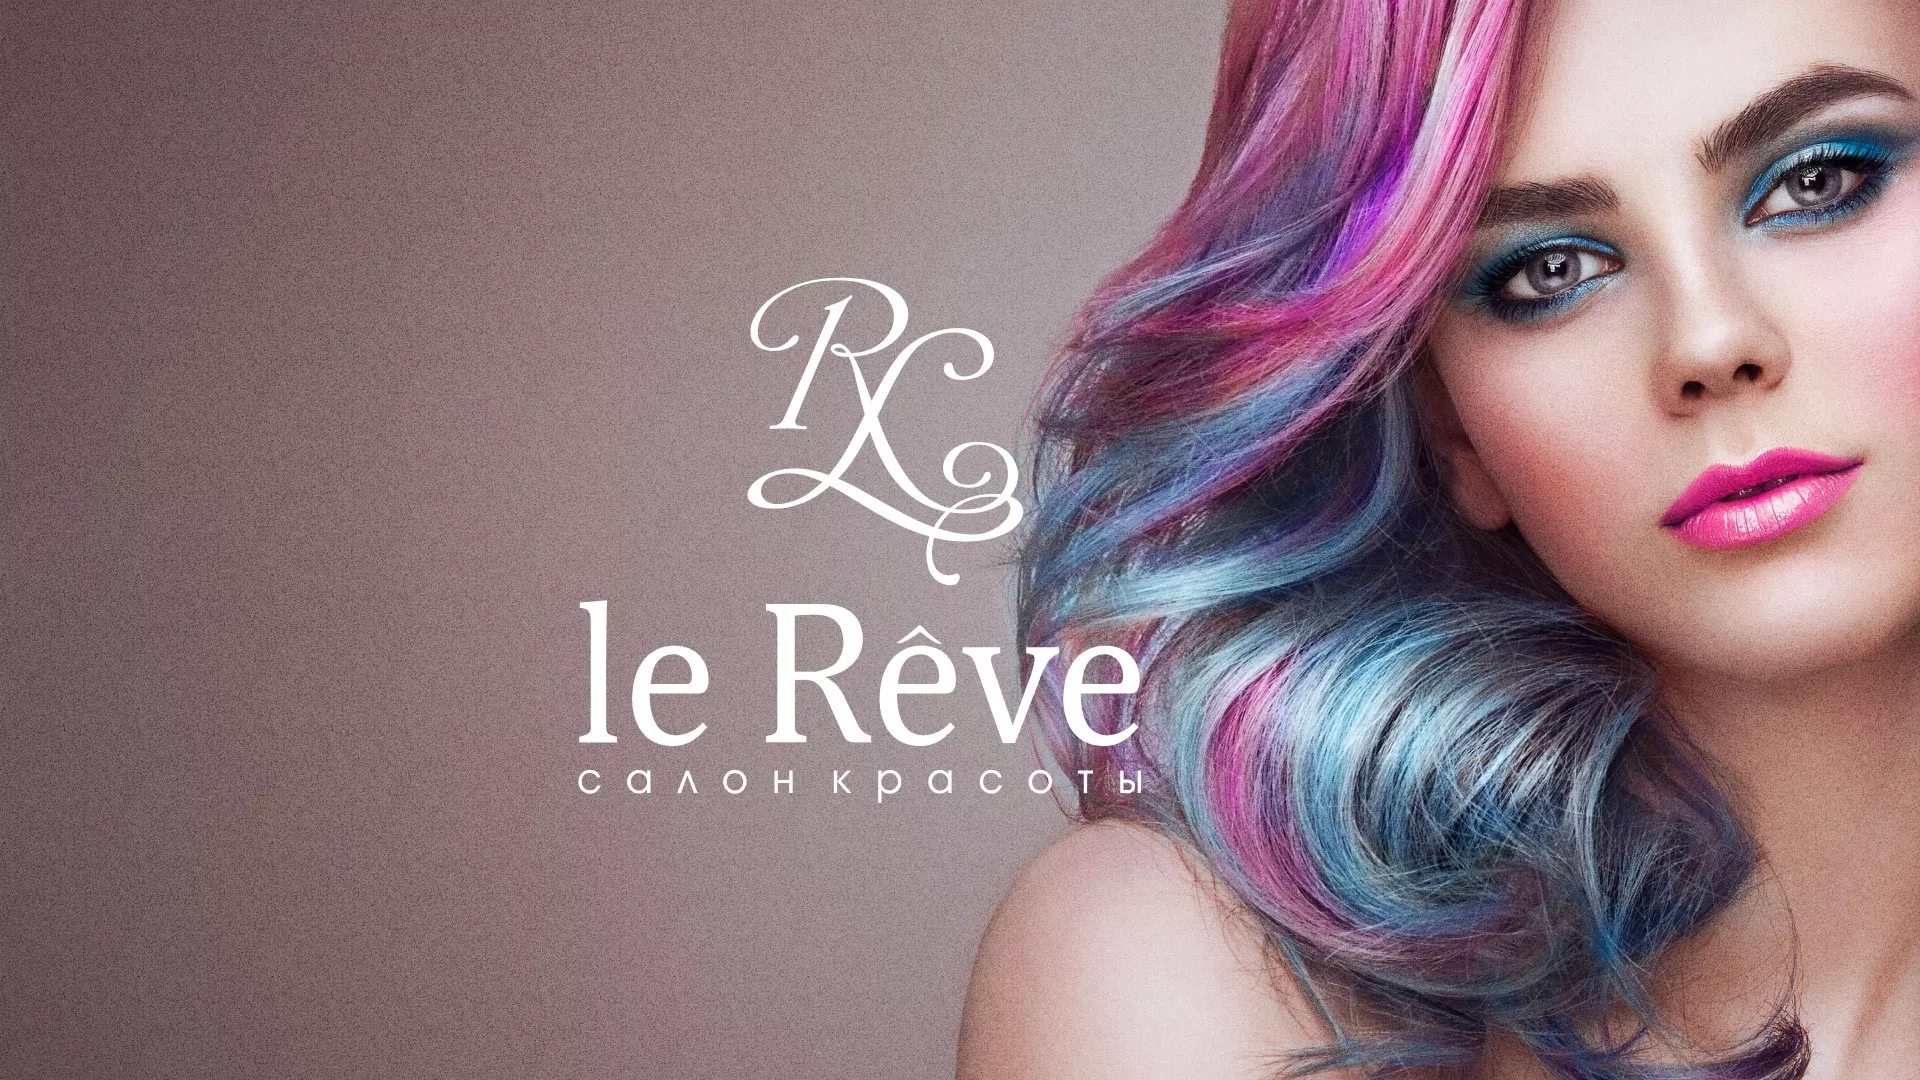 Создание сайта для салона красоты «Le Reve» в Городищах